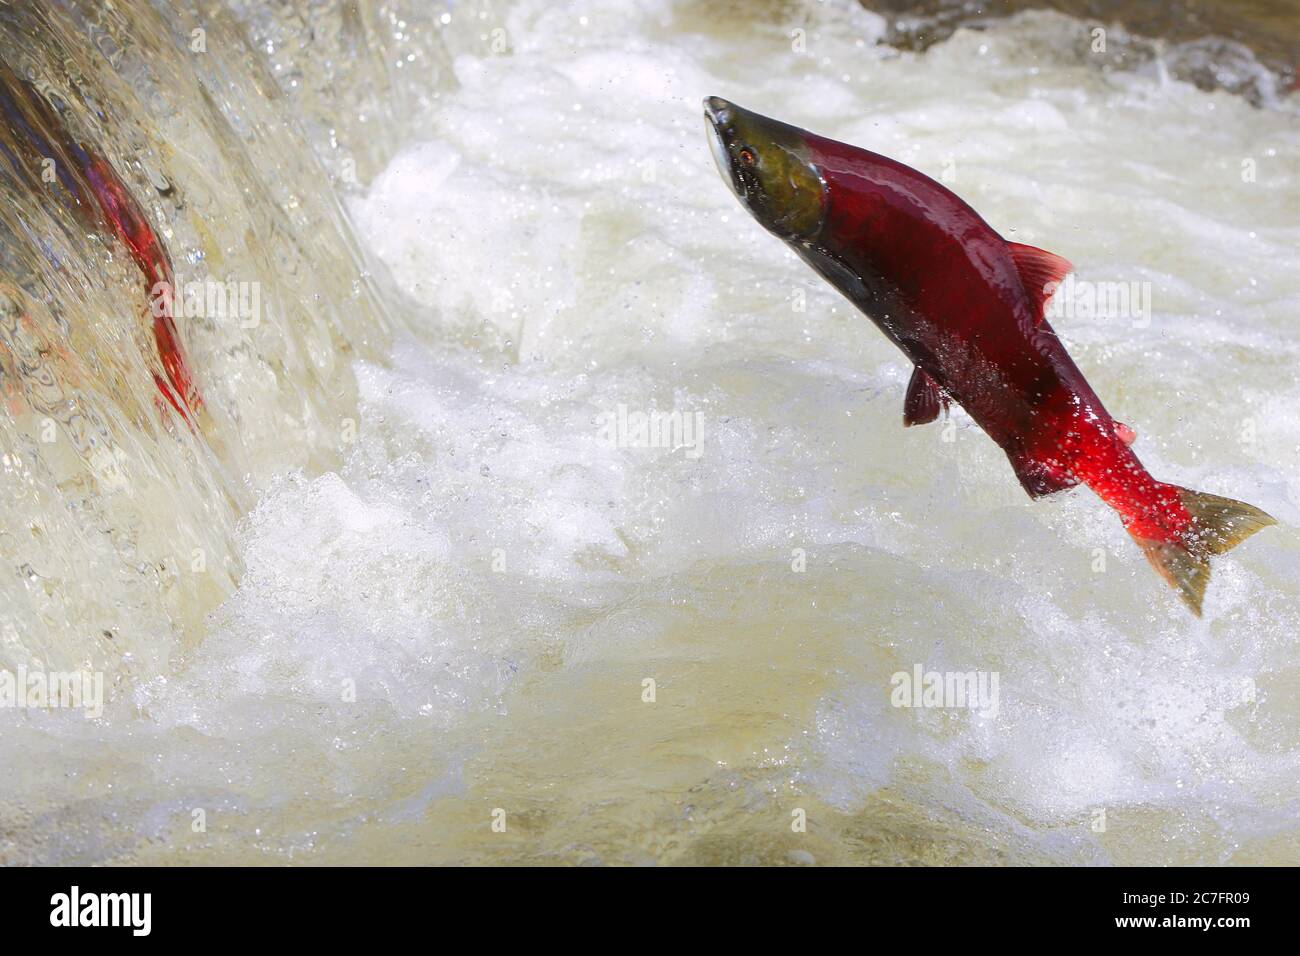 Gros saumon sockeye en plein air, chute d'eau de saut. ( Oncorhynchus nerka ) Banque D'Images